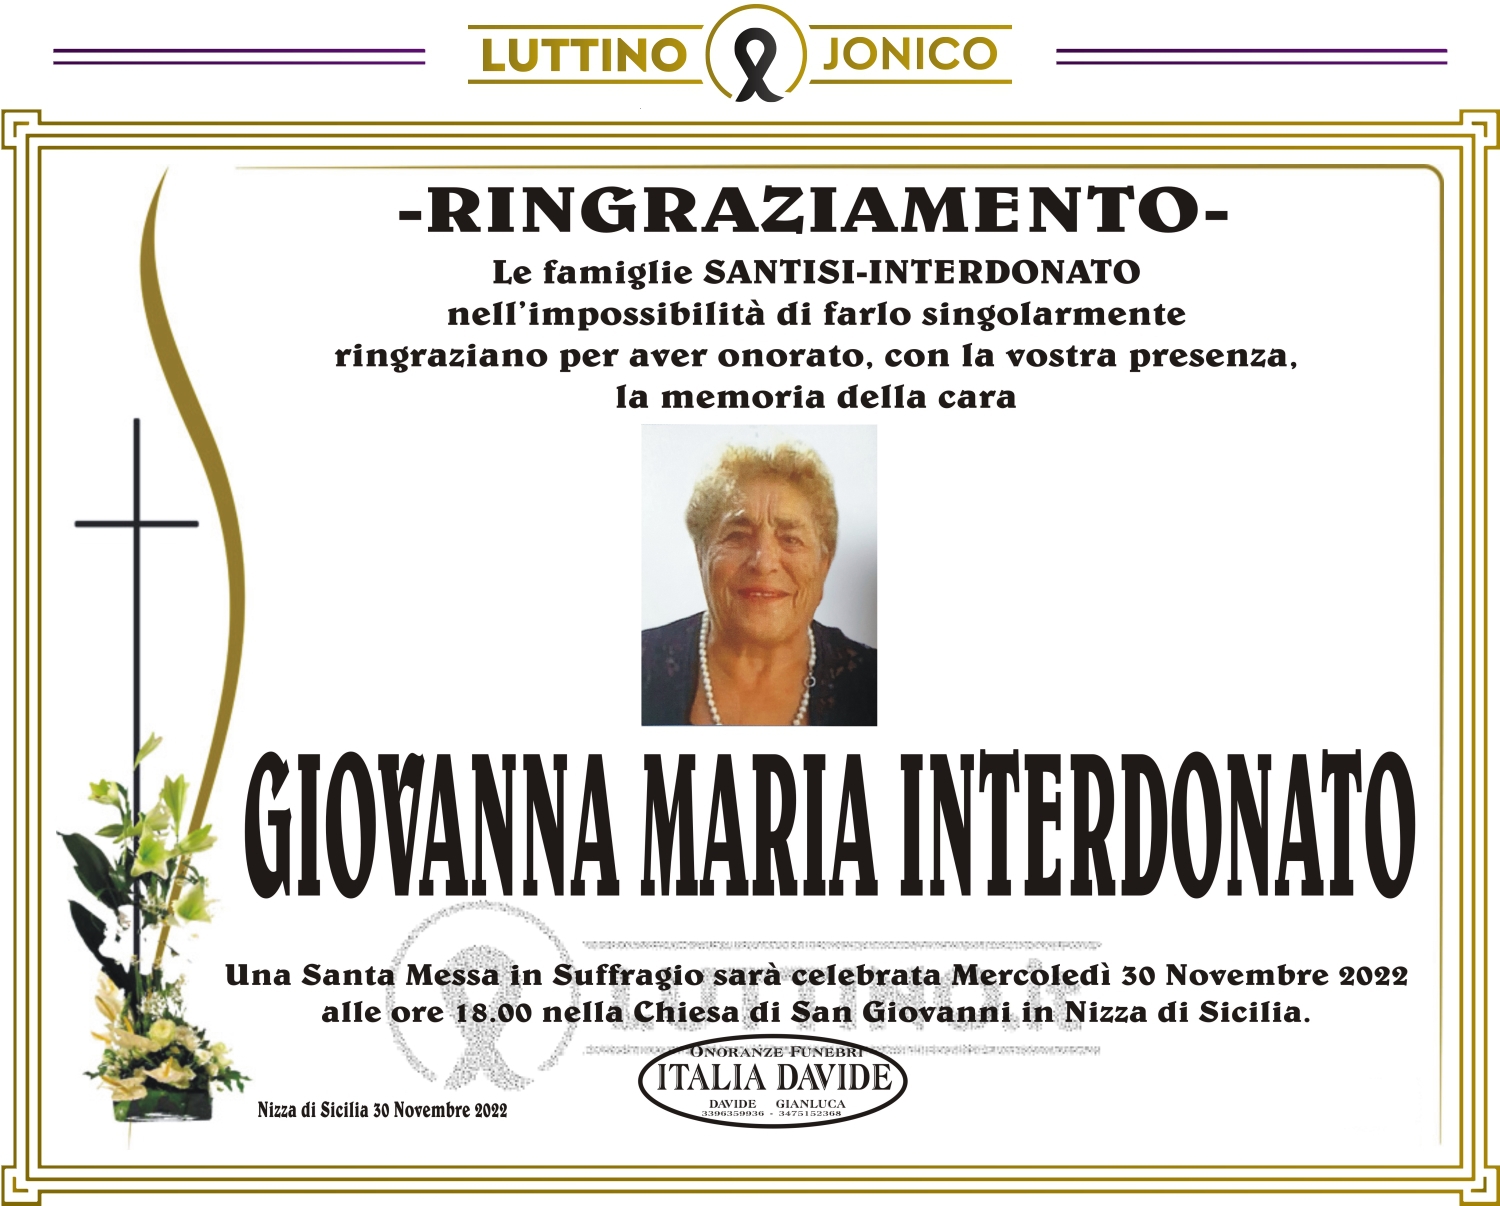 Giovanna Maria Interdonato